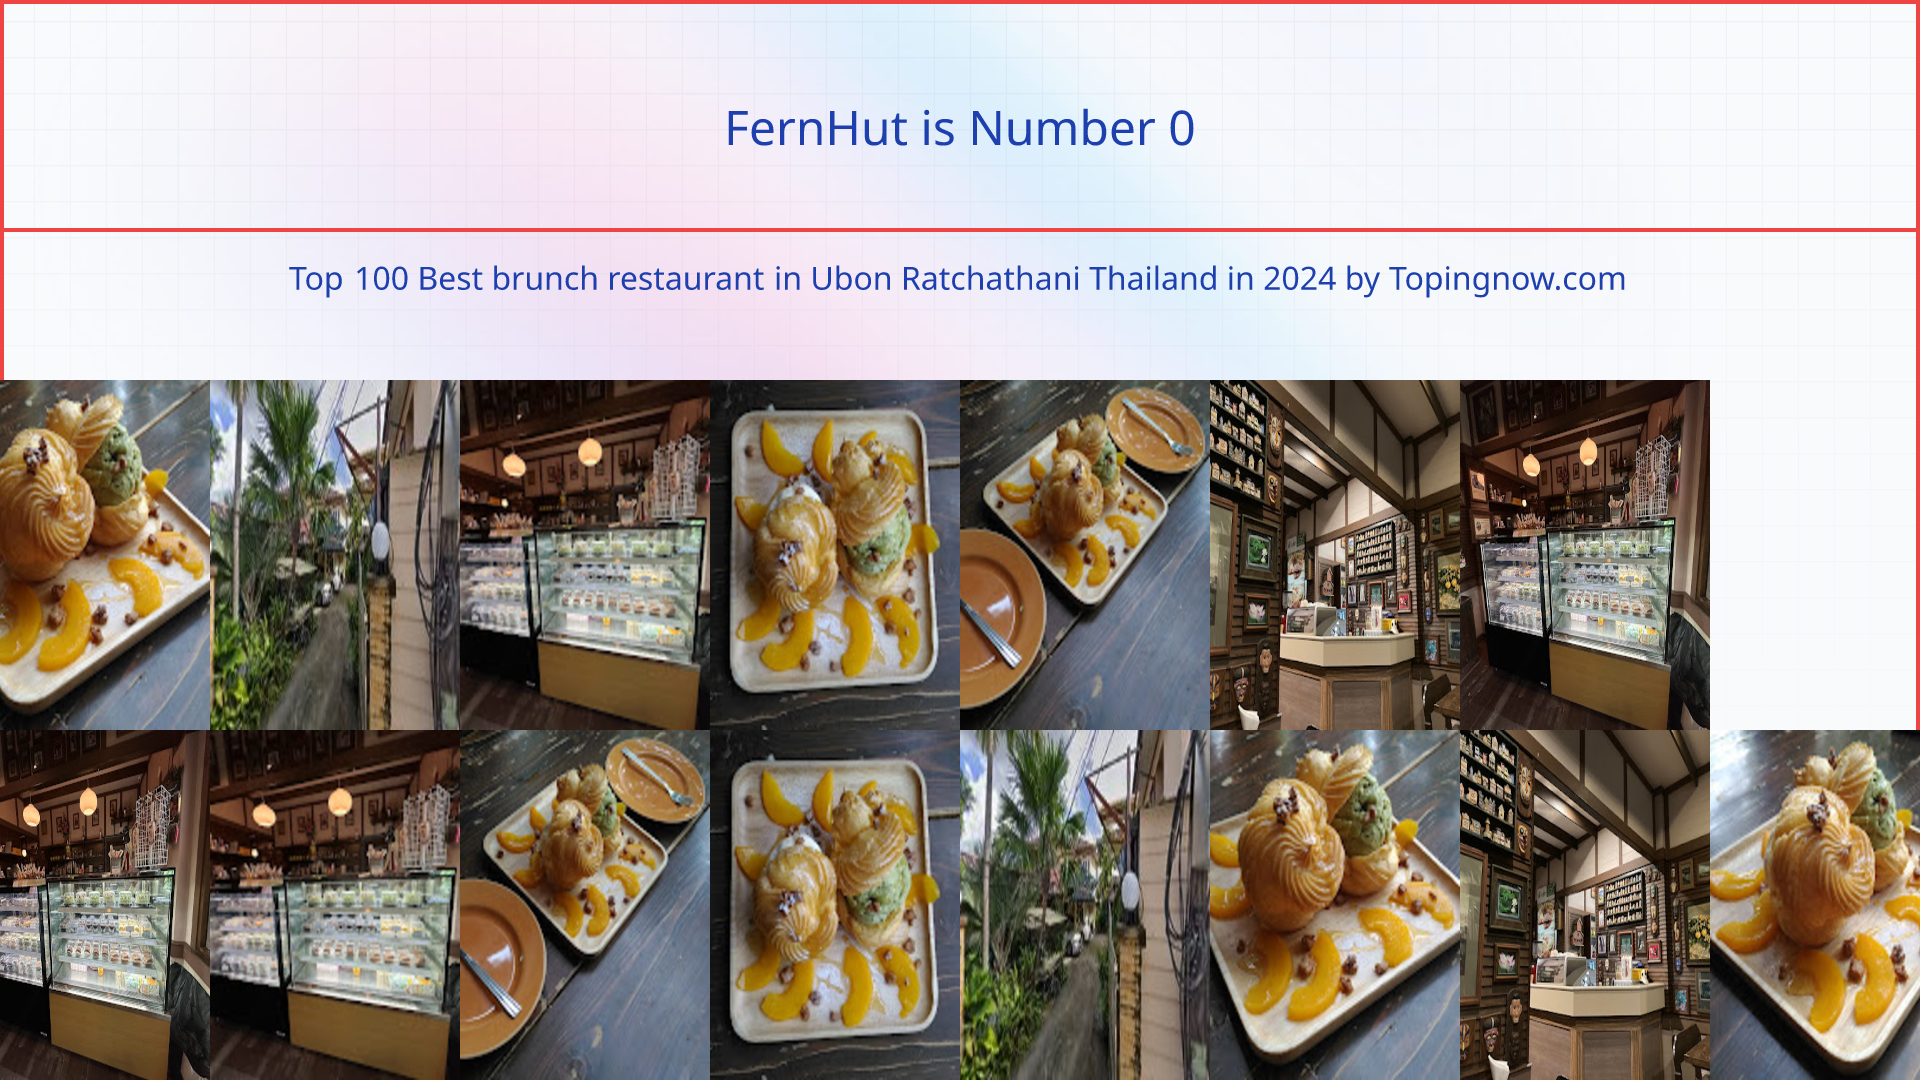 FernHut: Top 100 Best brunch restaurant in Ubon Ratchathani Thailand in 2024